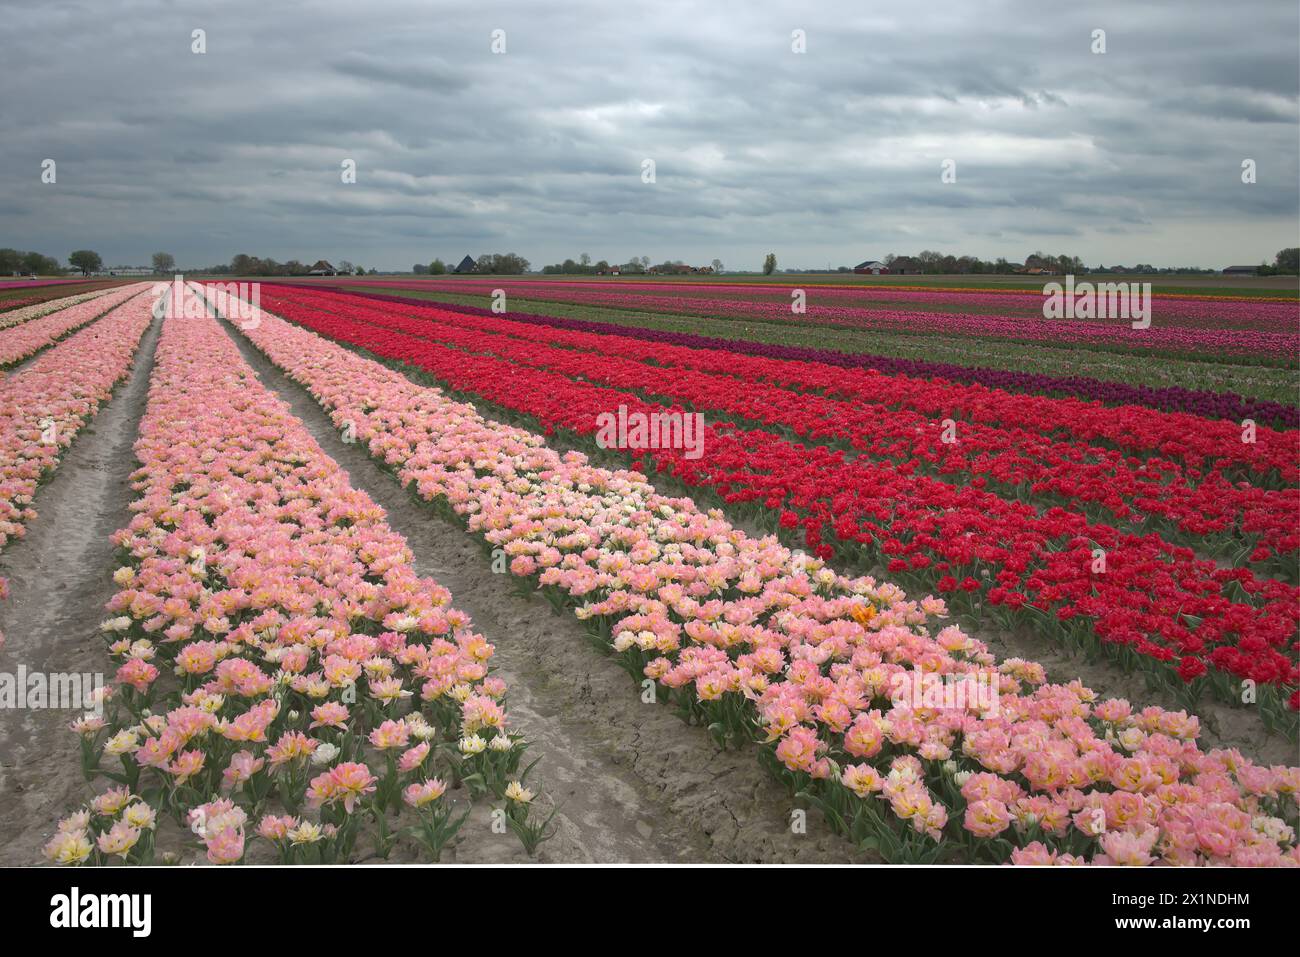 Tulpenveld met heel veel mooie kleuren en soorten. Stock Photo